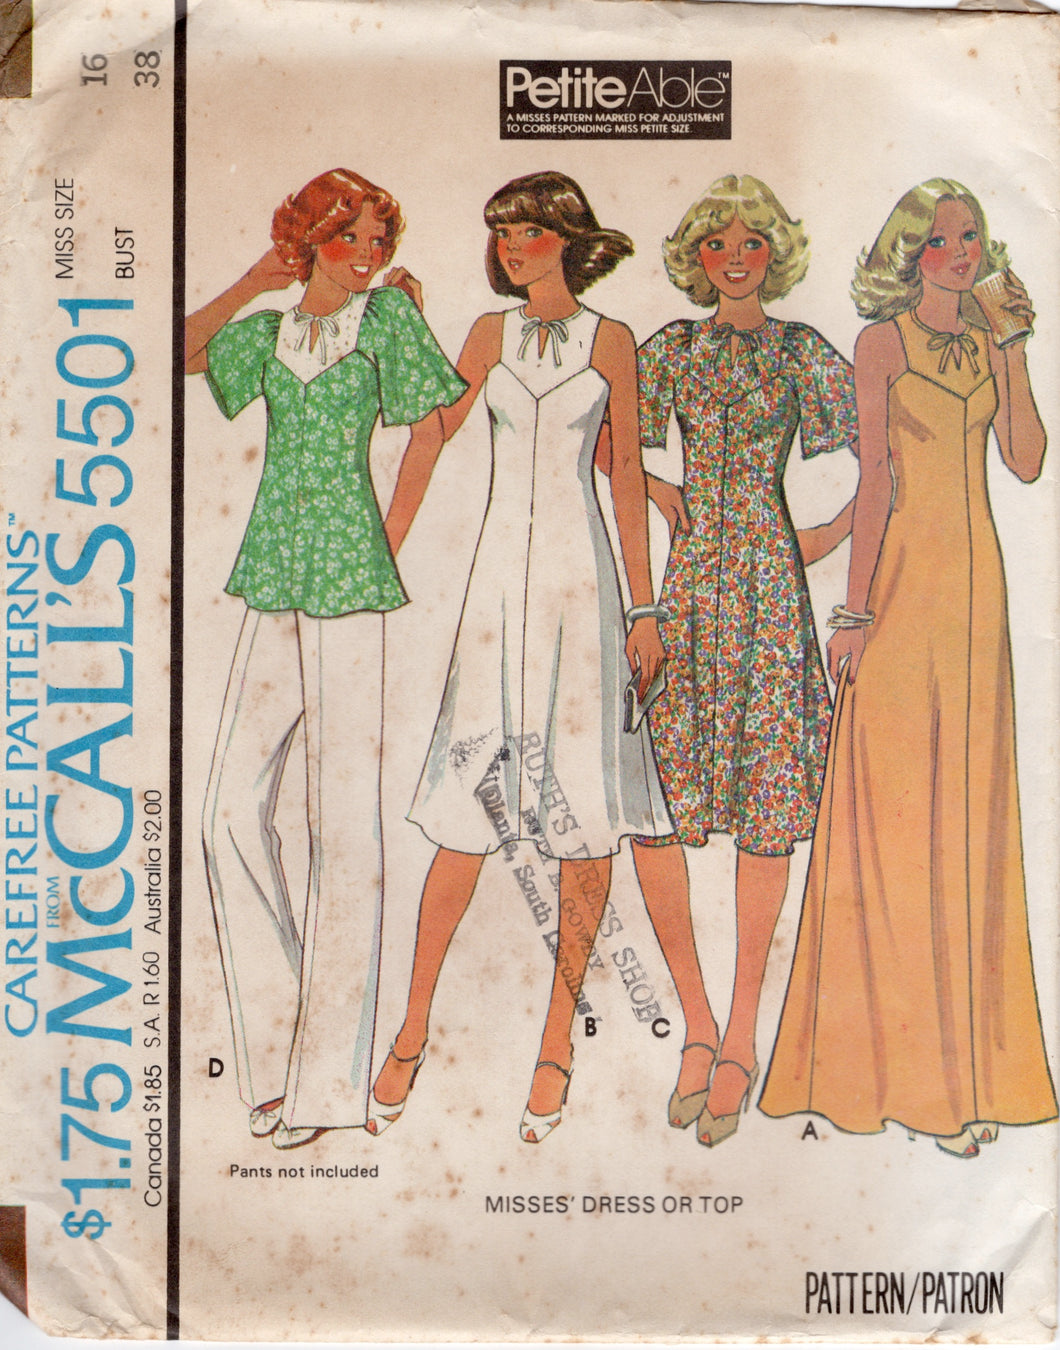 Lot of 5 Vintage Macramé Instruction and Pattern Books 1970s 